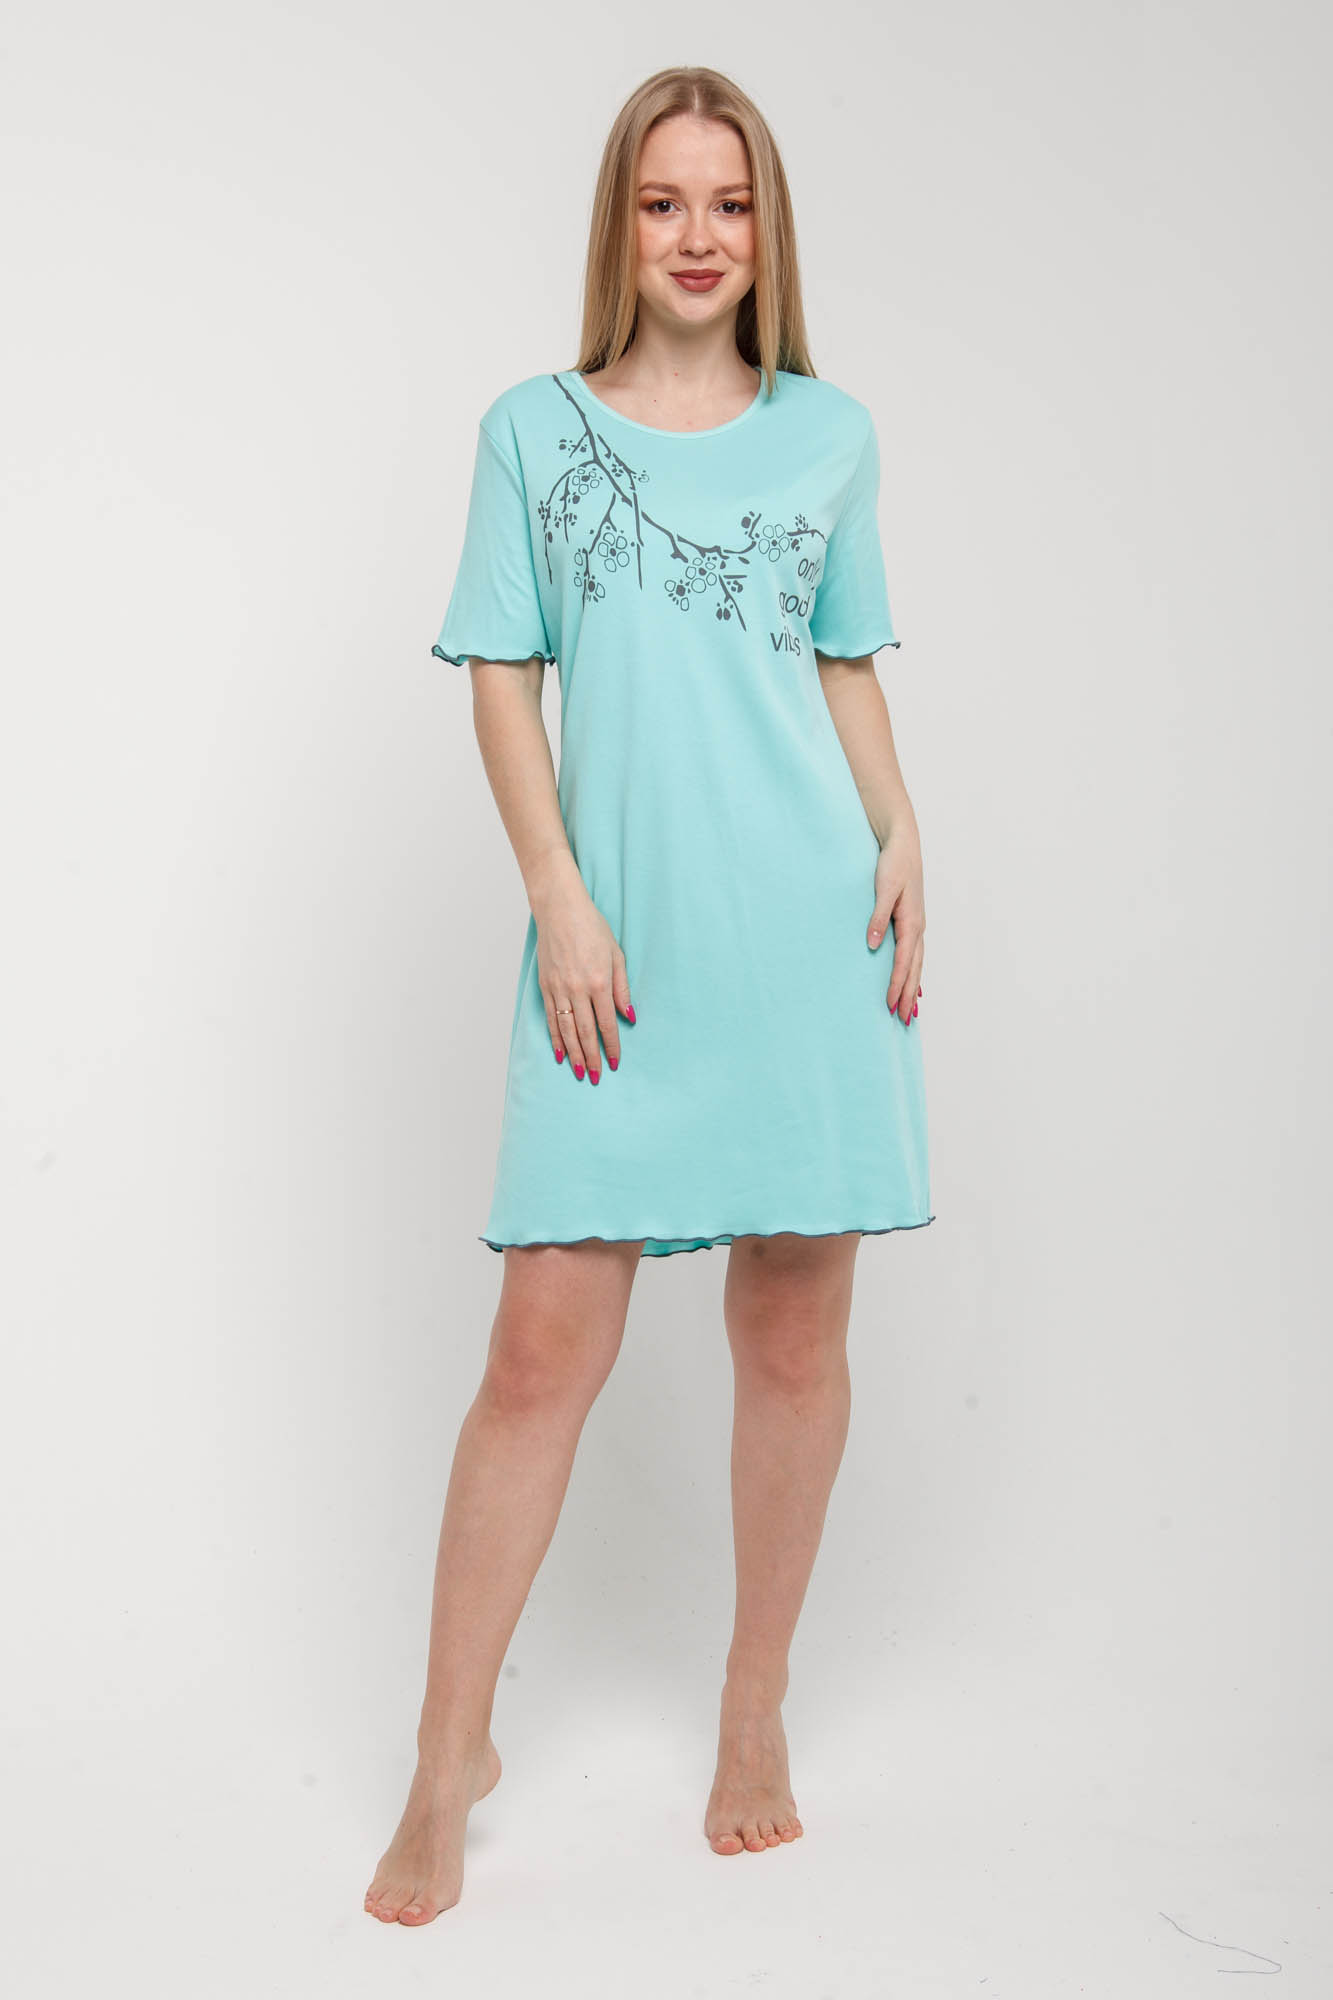 Ночная сорочка Linda Цвет: Светло-Зелёный (46), размер M-L